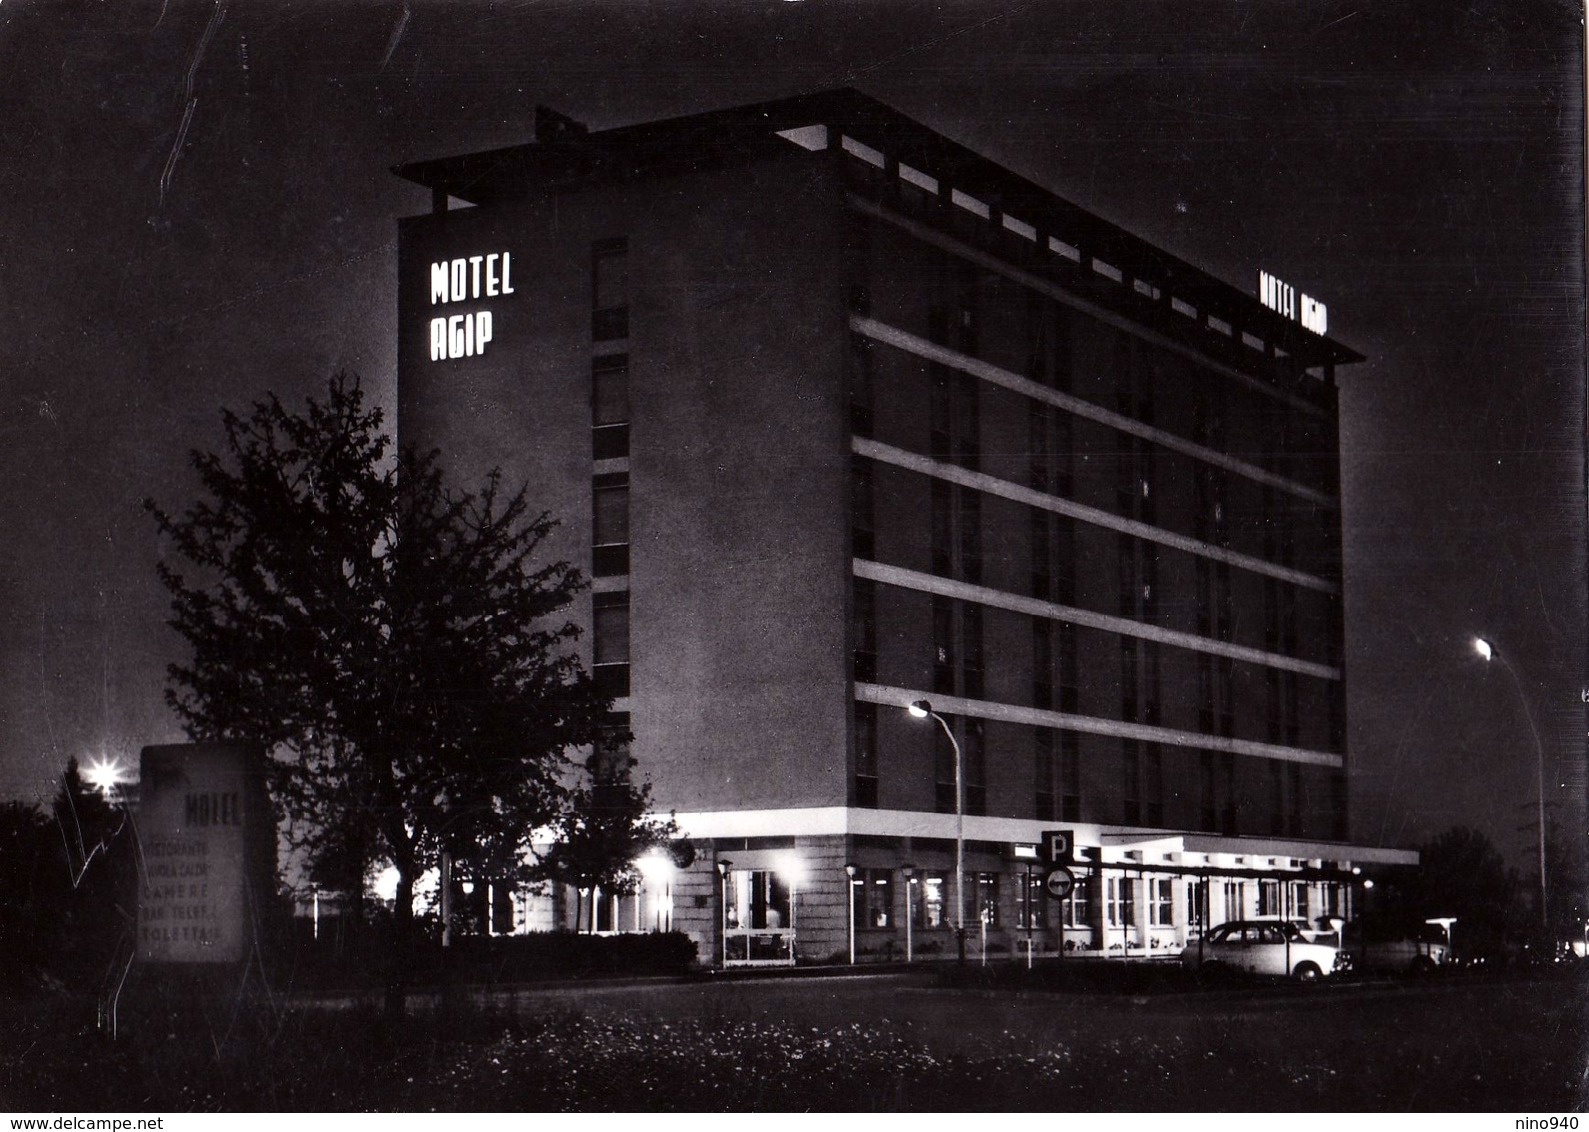 TORINO - Motel AGIP - Notturno - F/G - V: 1968 - Bars, Hotels & Restaurants